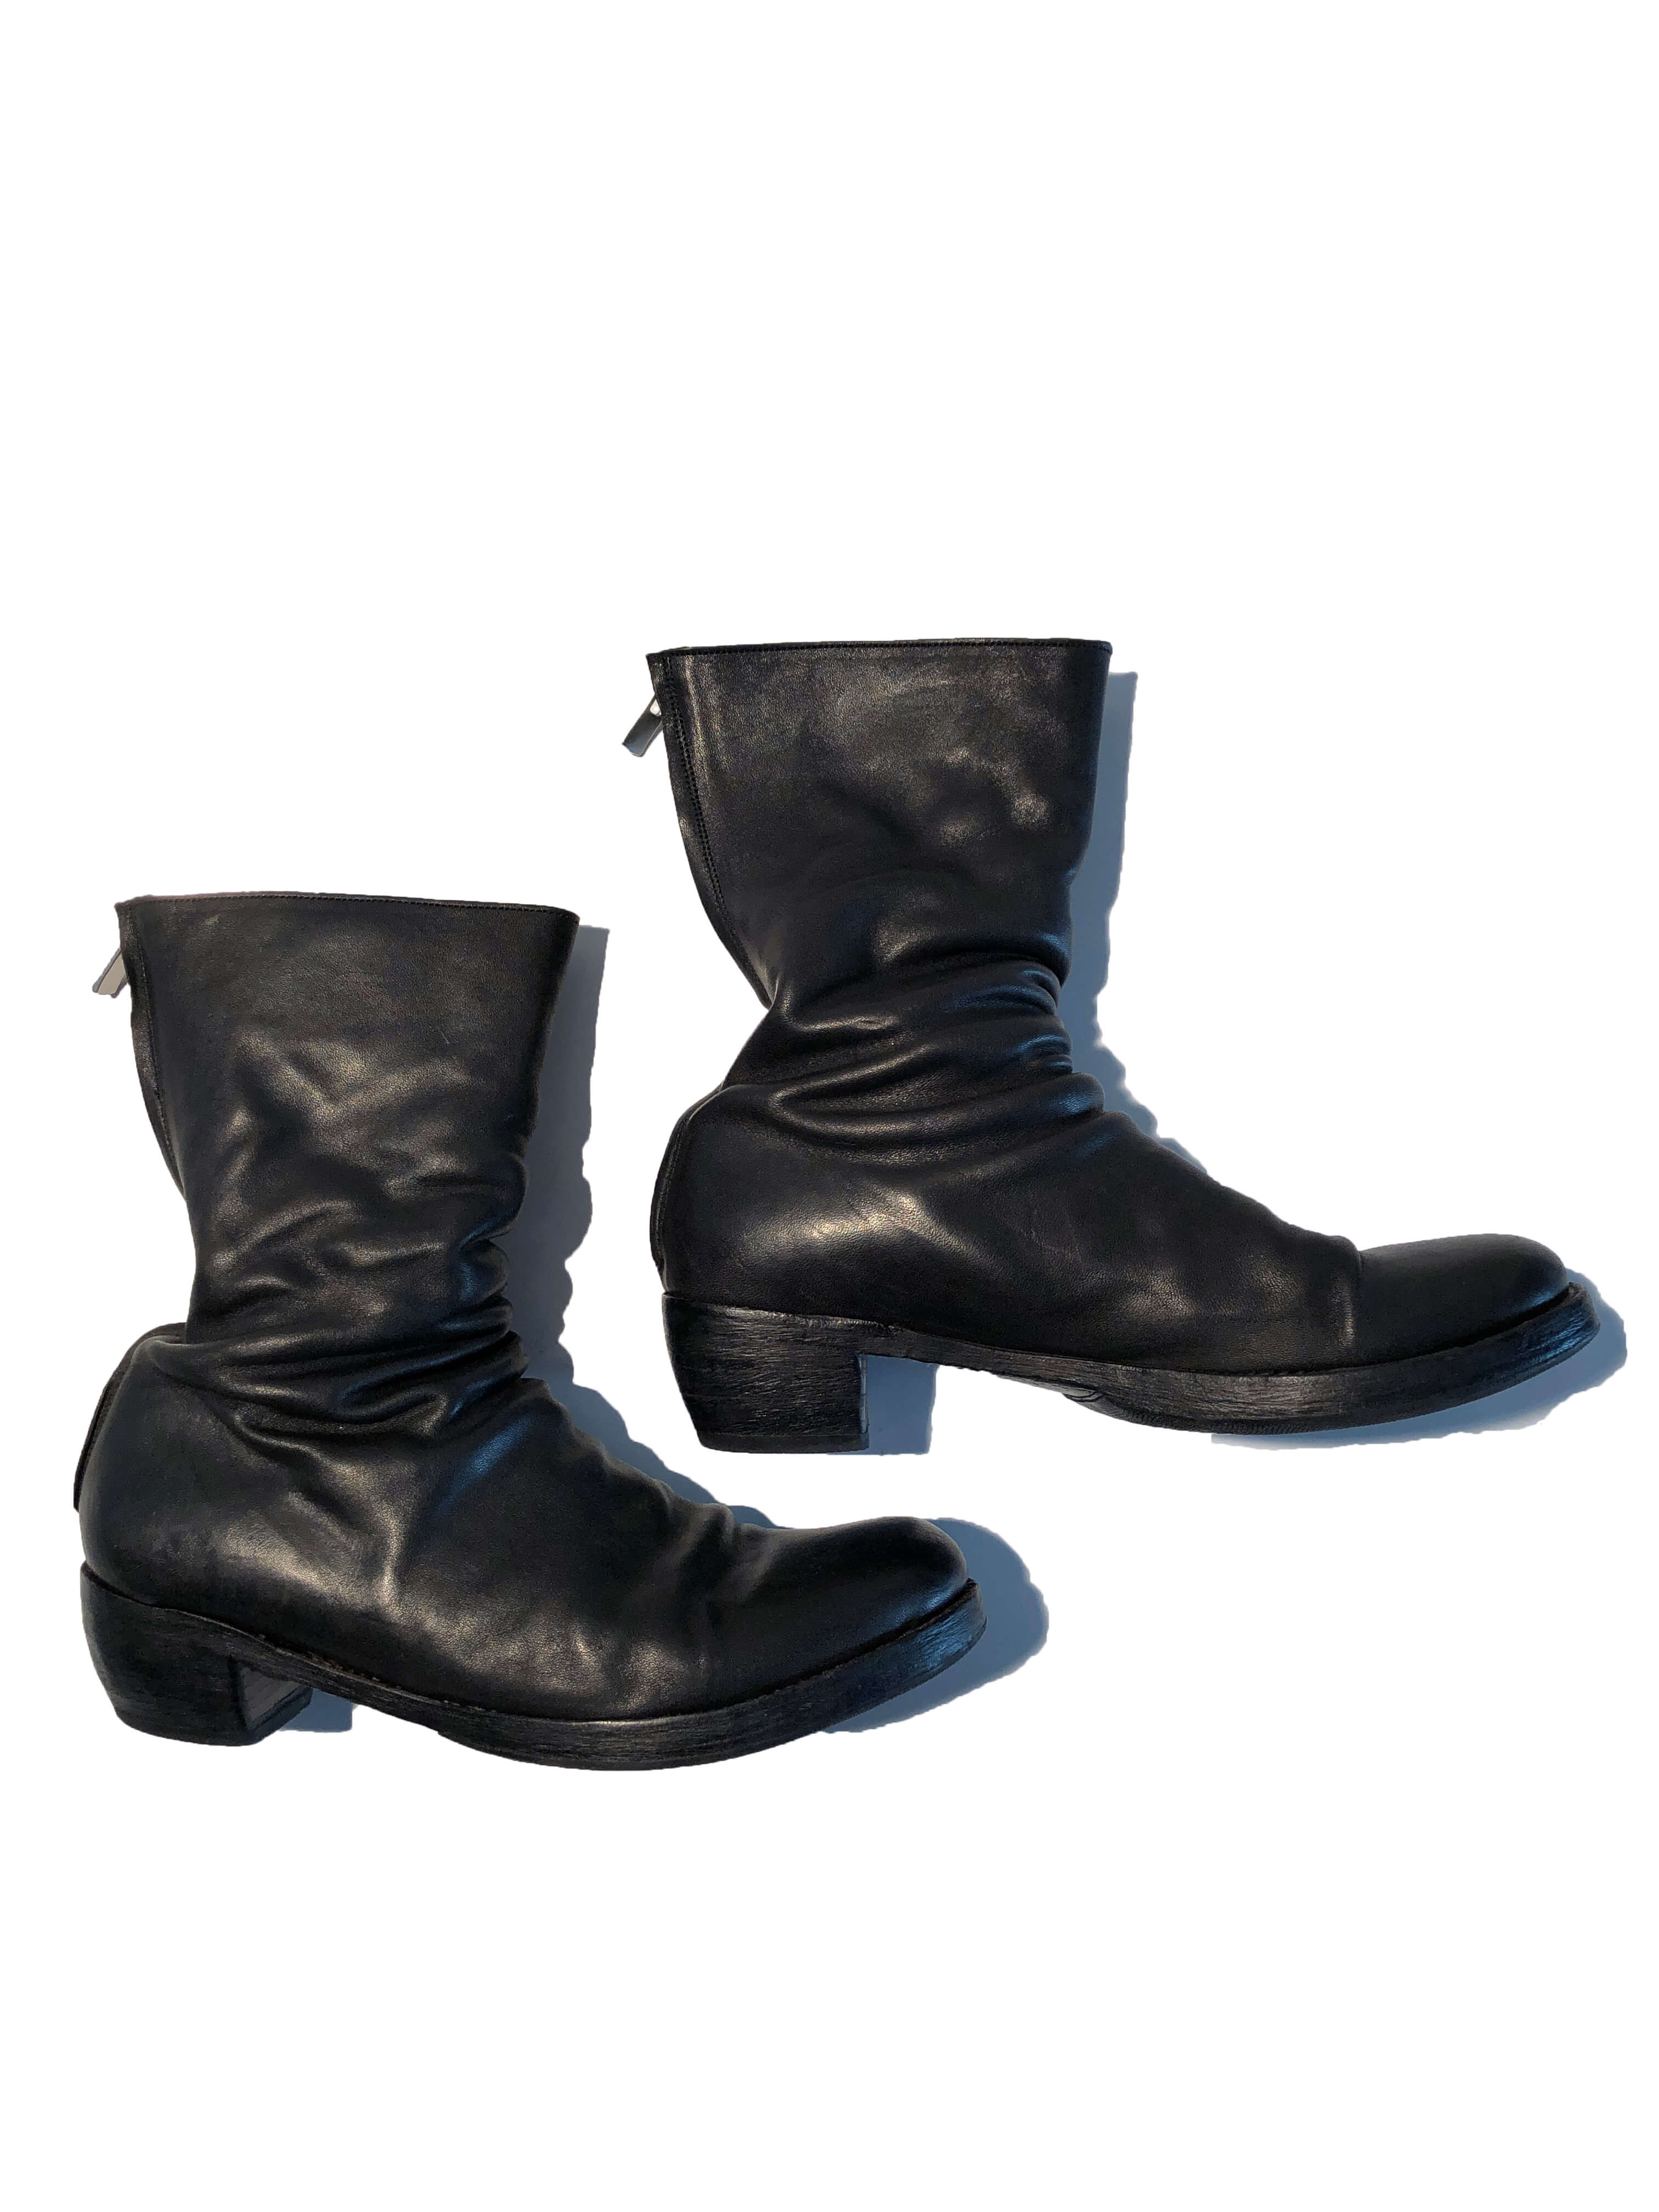 EVARIST BERTRAN EB10T back zipper boots